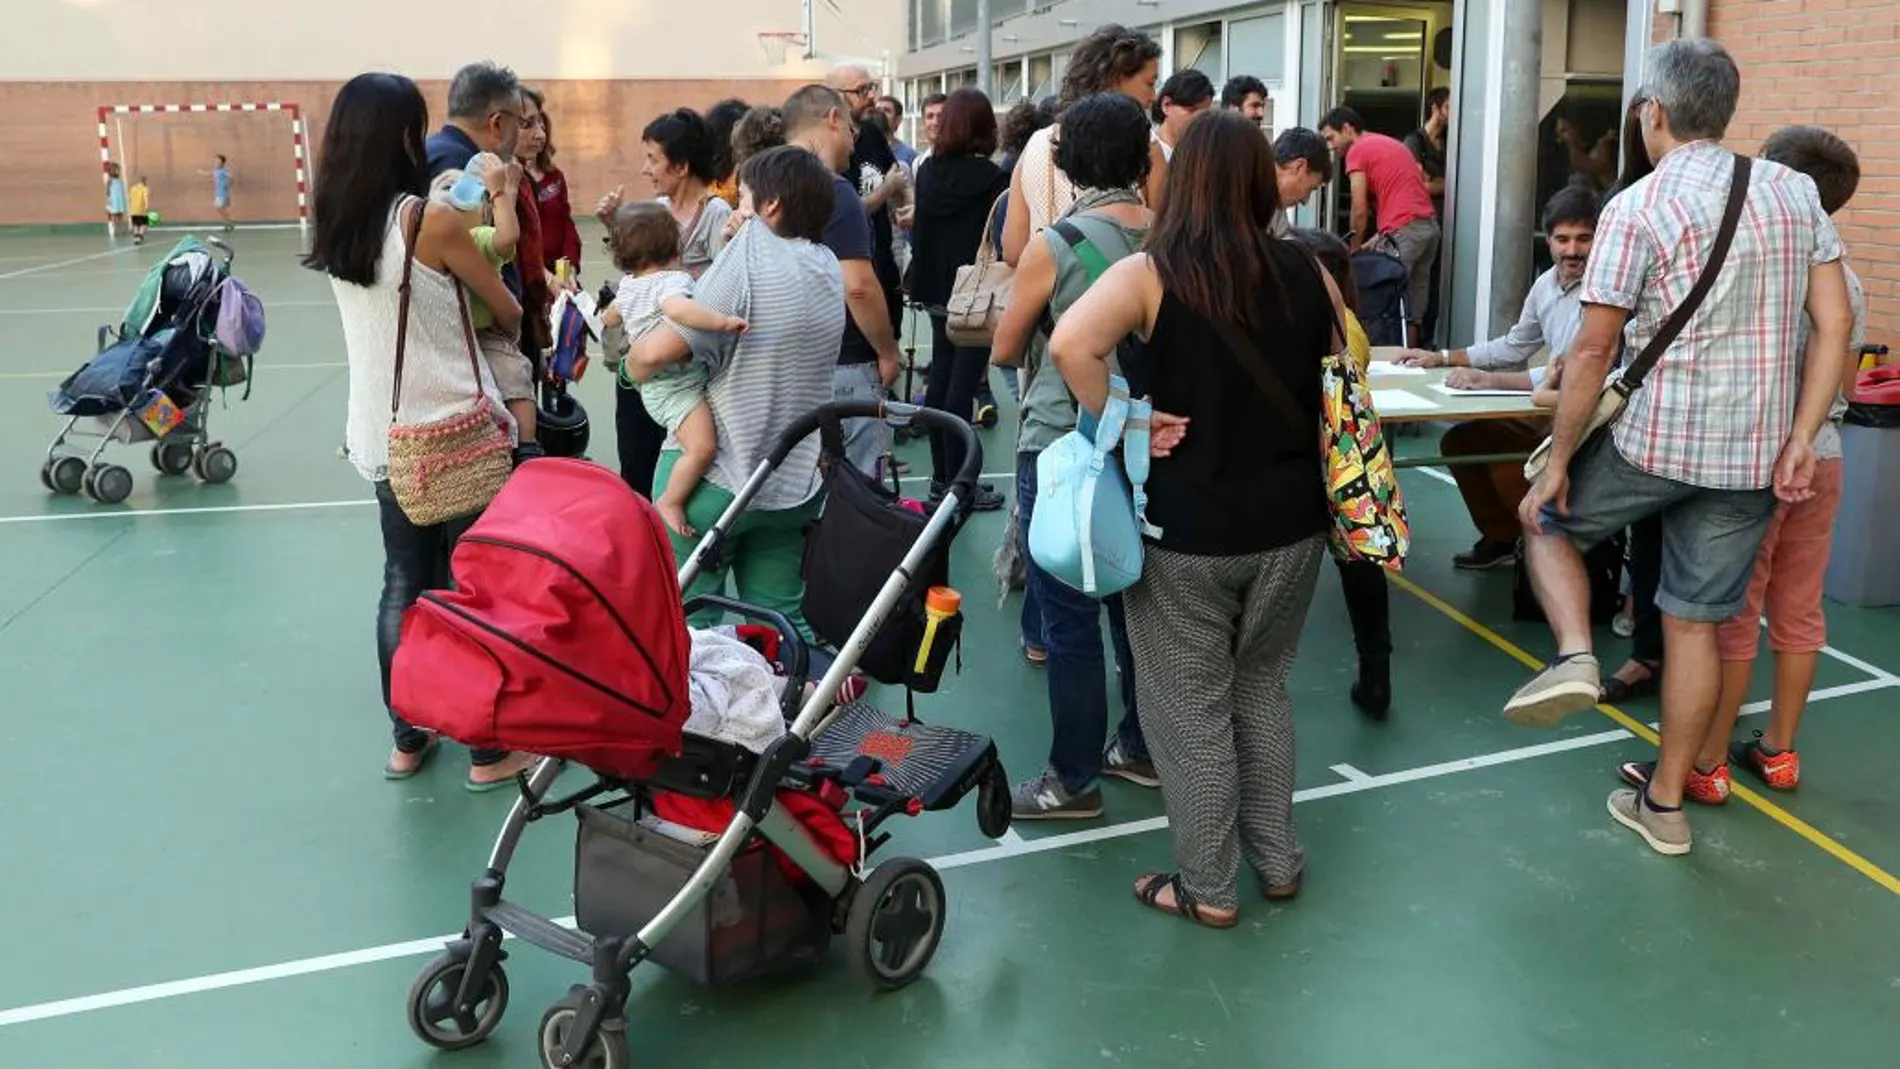 Padres de alumnos en la Escola Diputació de Barcelona, para organizar la "Festa de la tardor"(Fiesta del otoño)